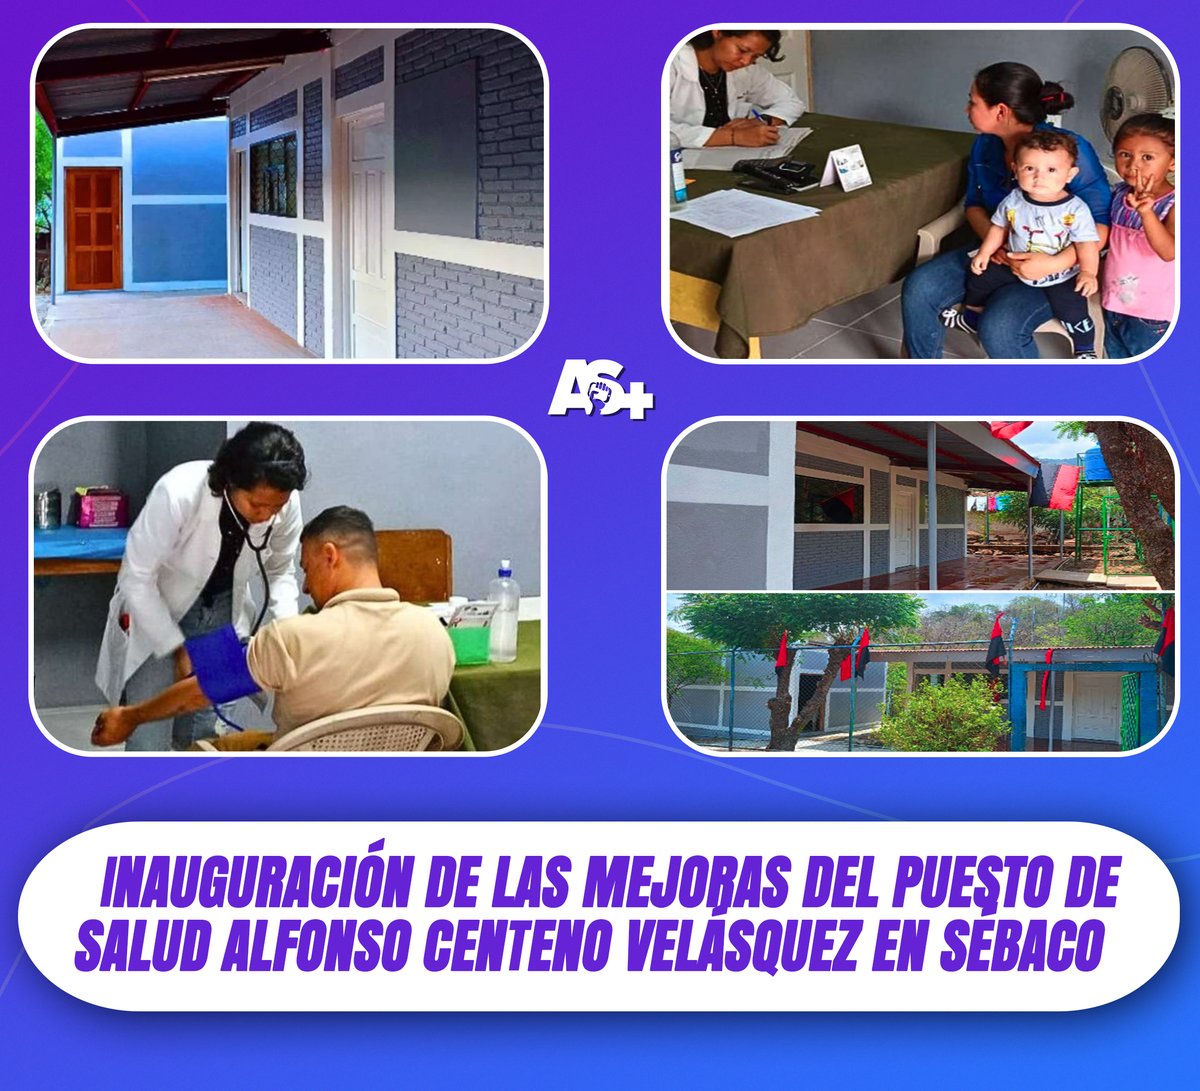 Este viernes 10 de mayo la comunidad #LasPozas, en #Sebaco - #Matagalpa, inauguran las mejoras en el Puesto de Salud Alfonso Centeno Velásquez, beneficiando a 931 habitantes de comunidades cercanas.📷📷📷📷
#SoberaníayDignidadNacional
#AdelanteSiempre